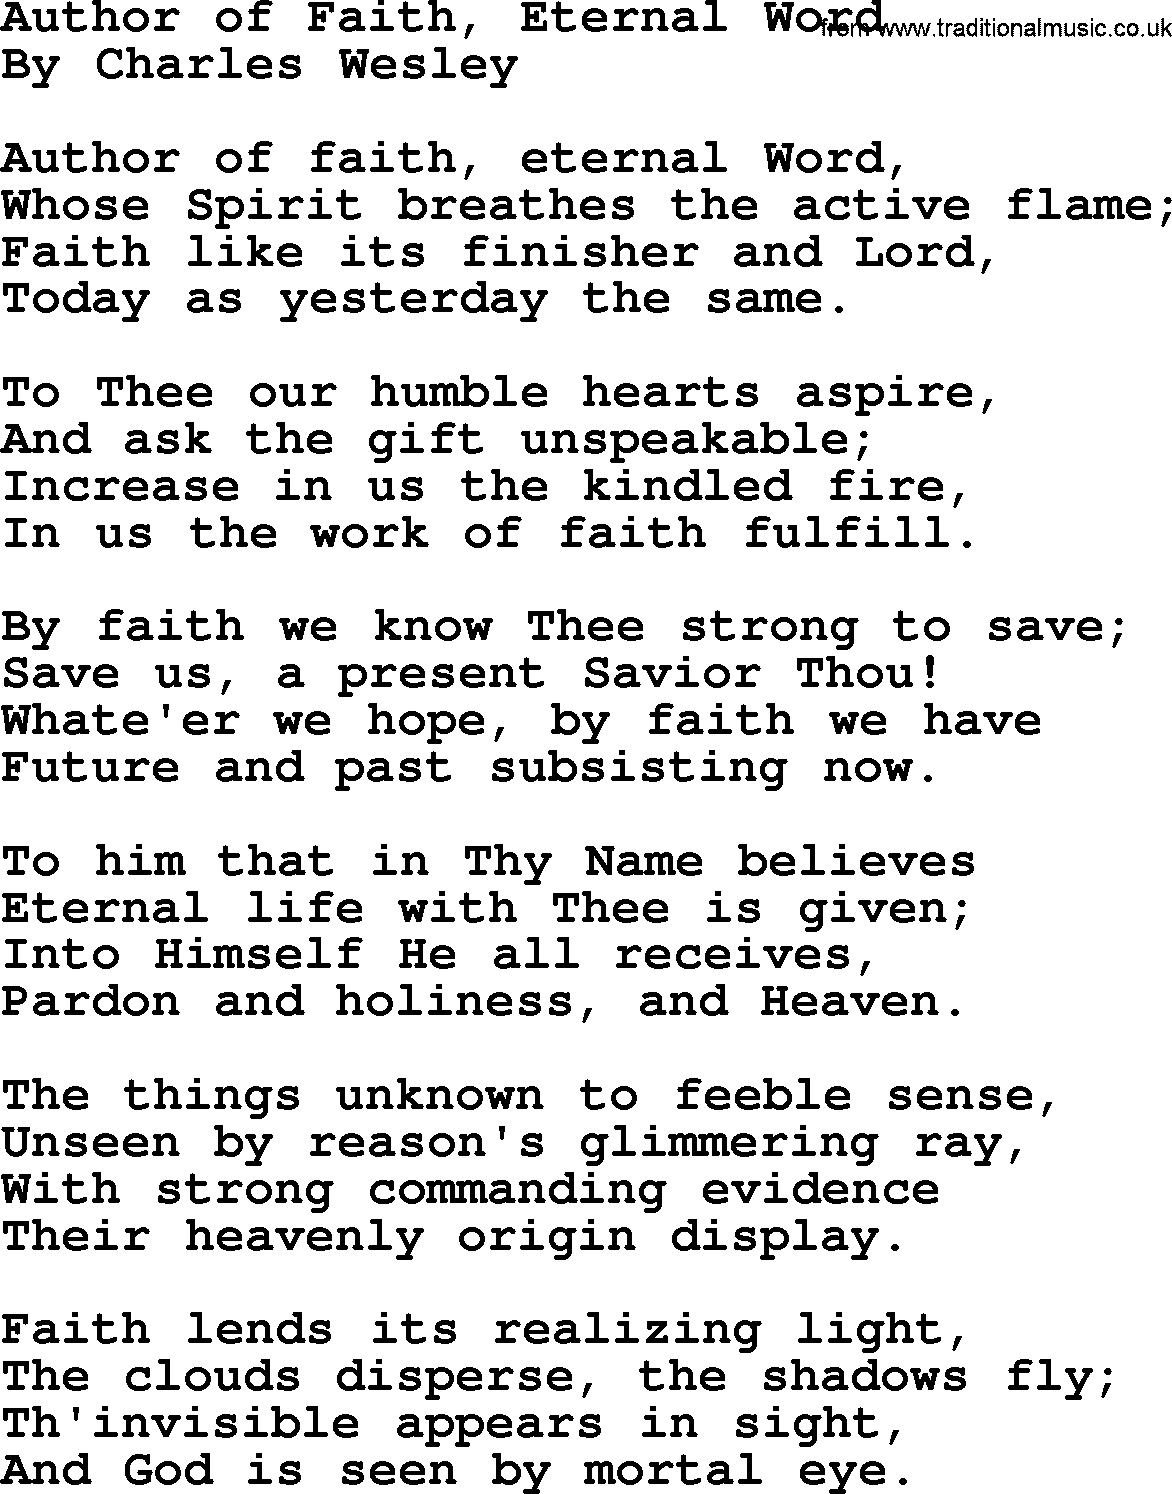 Charles Wesley hymn: Author Of Faith, Eternal Word, lyrics